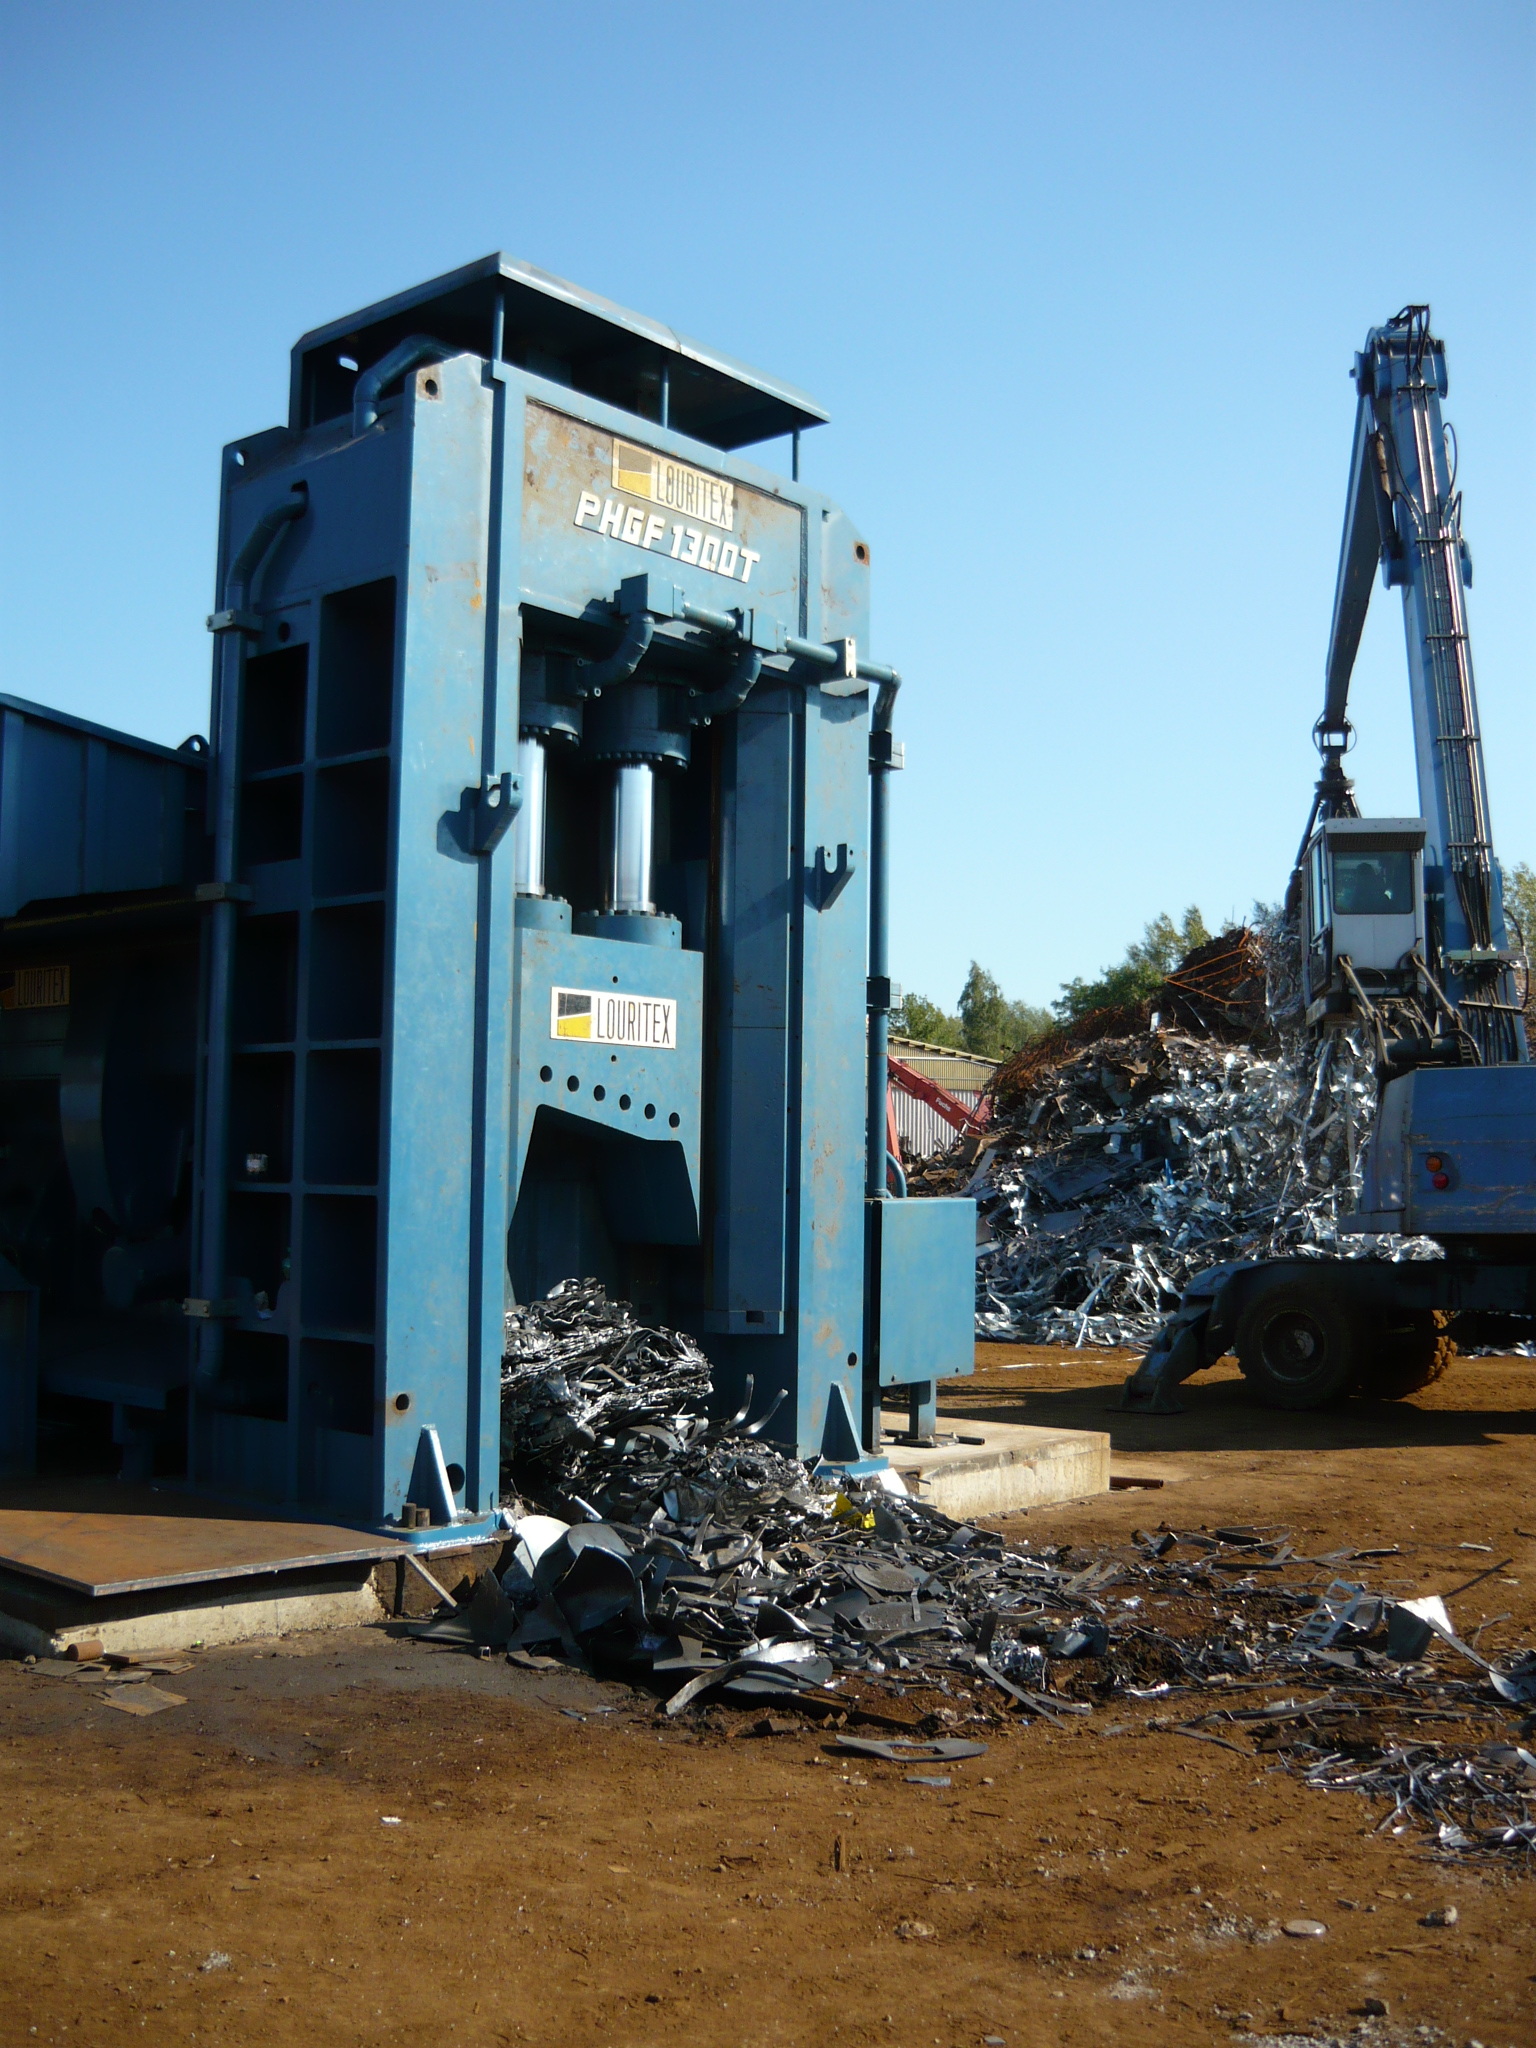 Rozšíření a zefektivnění kapacit provozovny pro zpracování kovového odpadu v Ostravě - Mariánských Horách